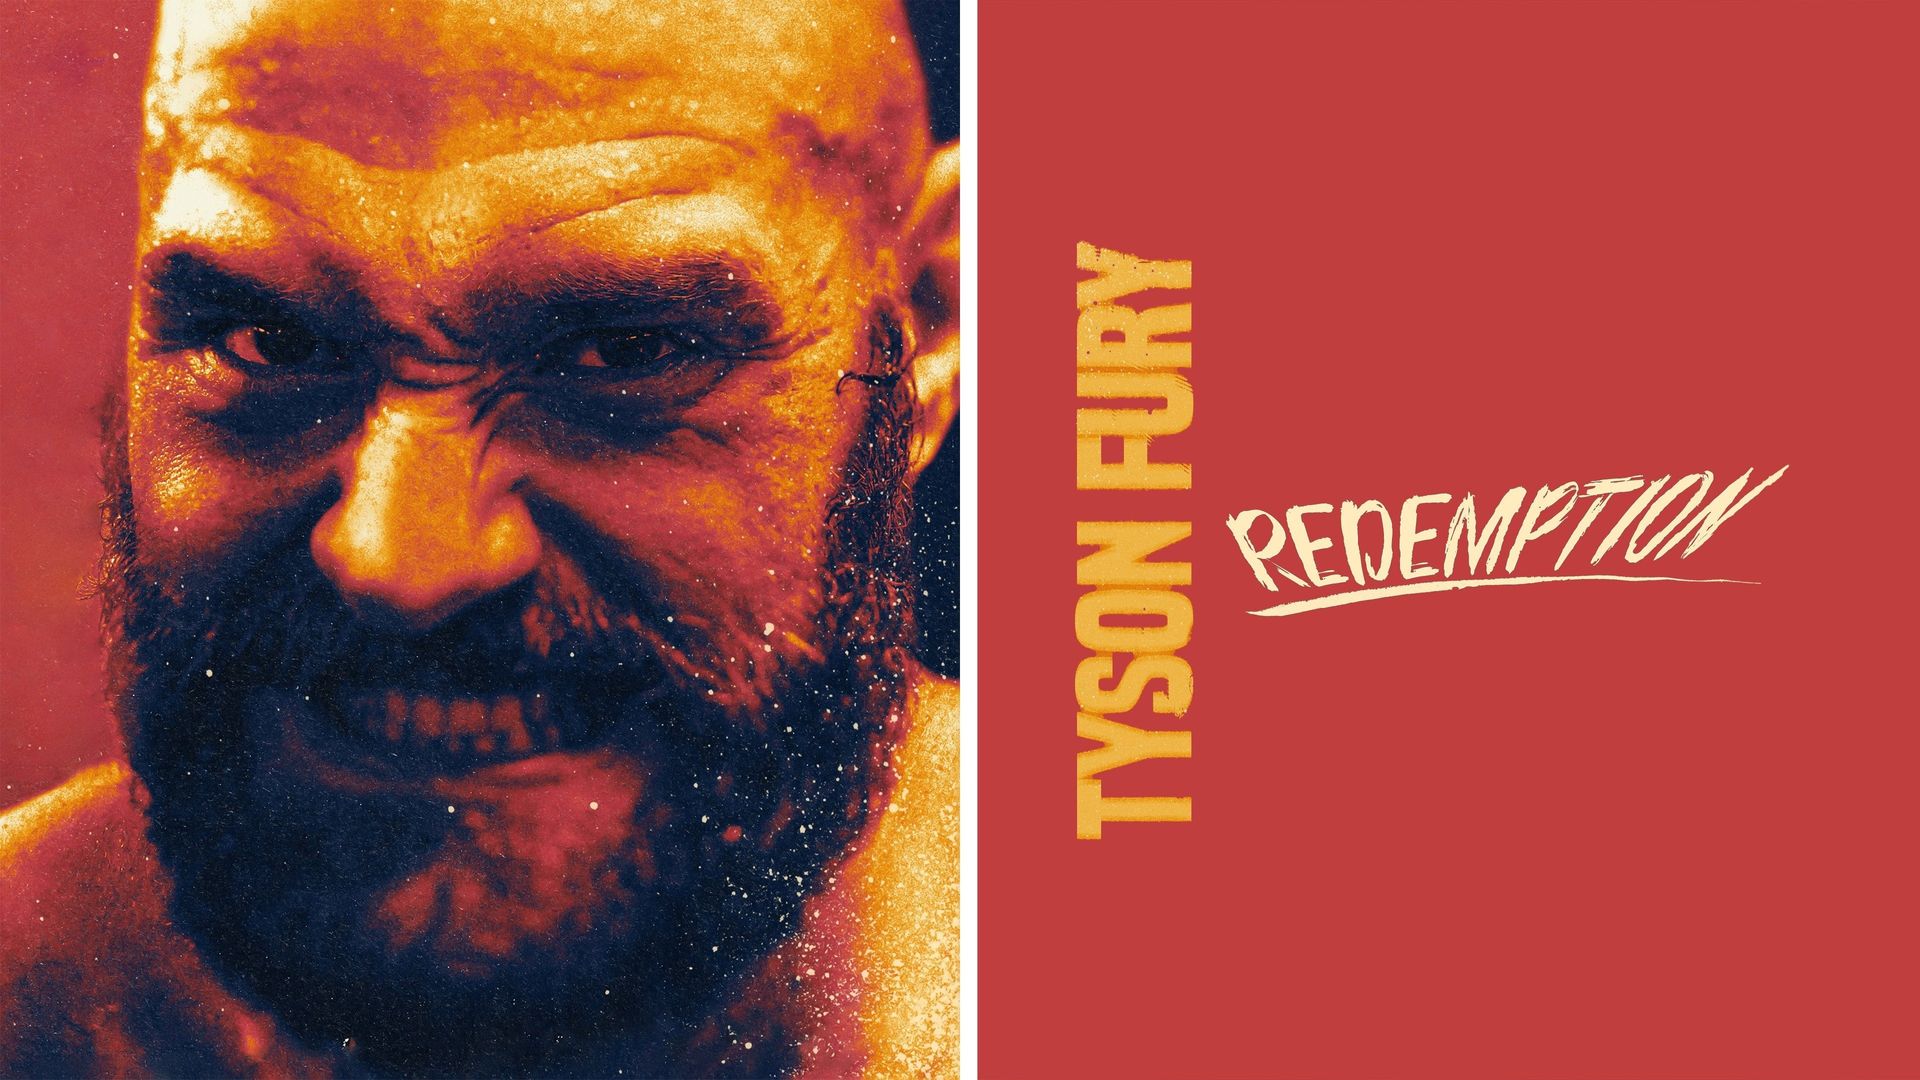 Tyson Fury: Redemption background